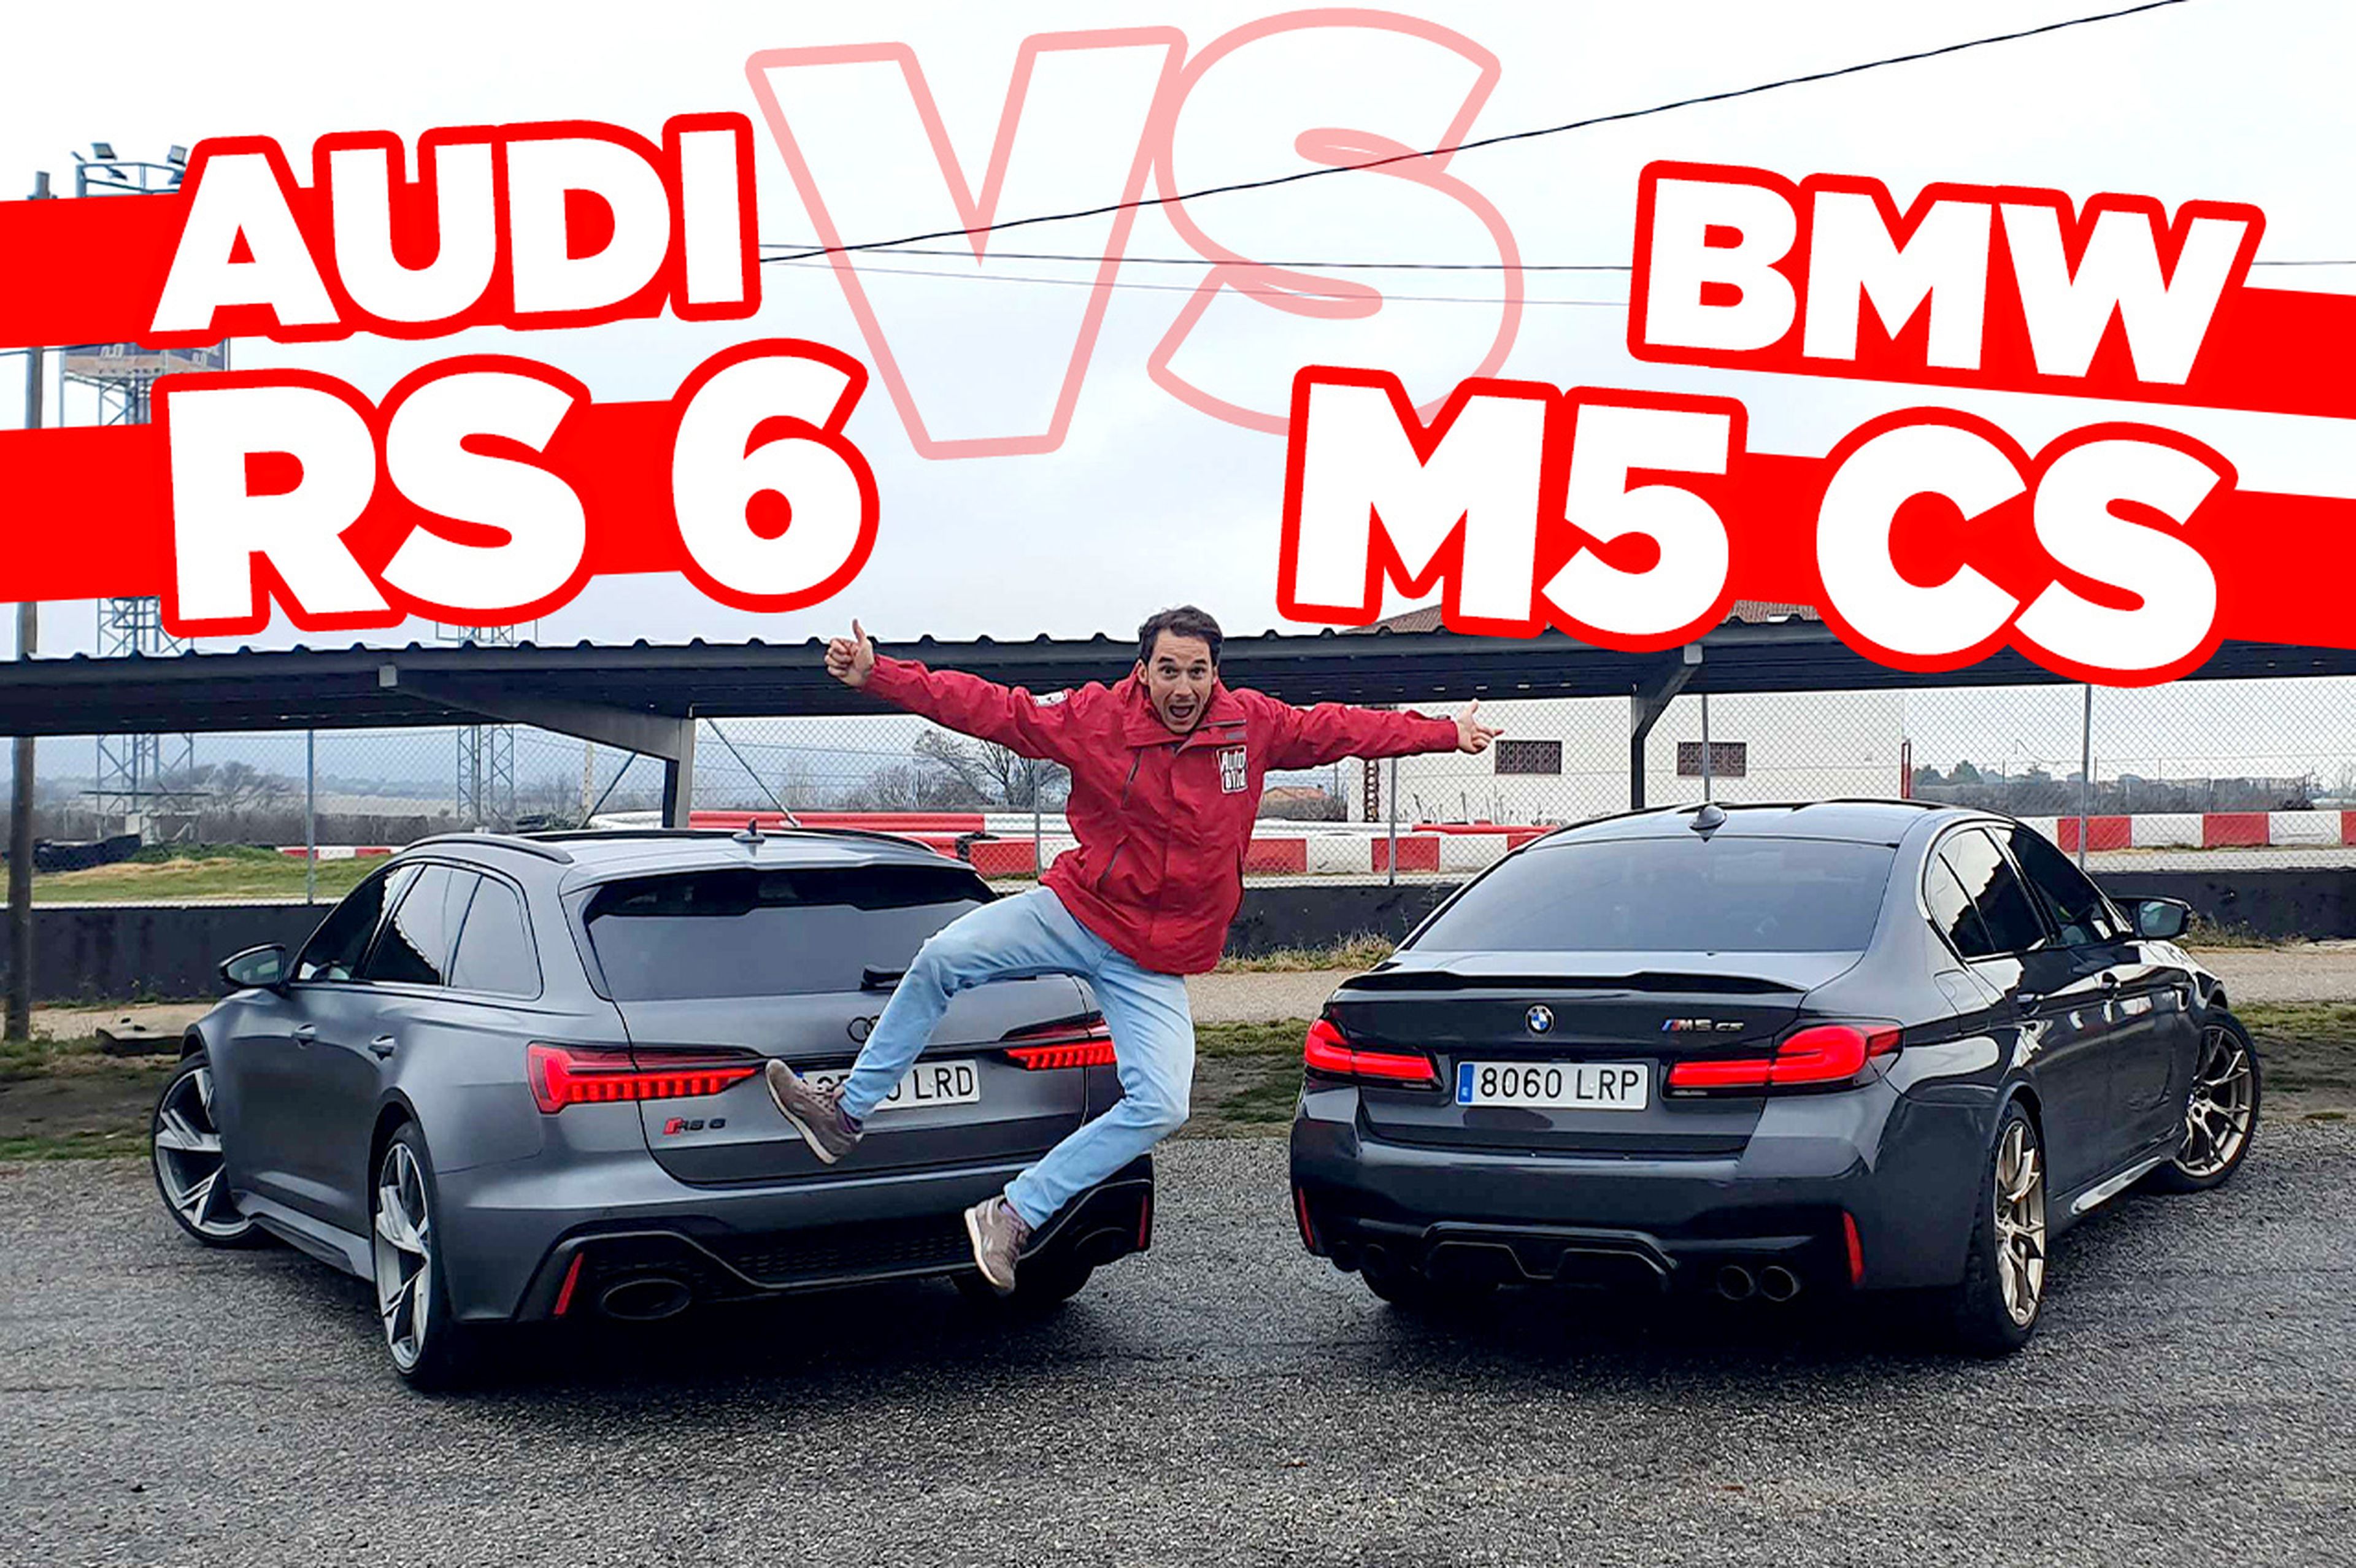 VÍDEO: BMW M5 CS vs Audi RS6